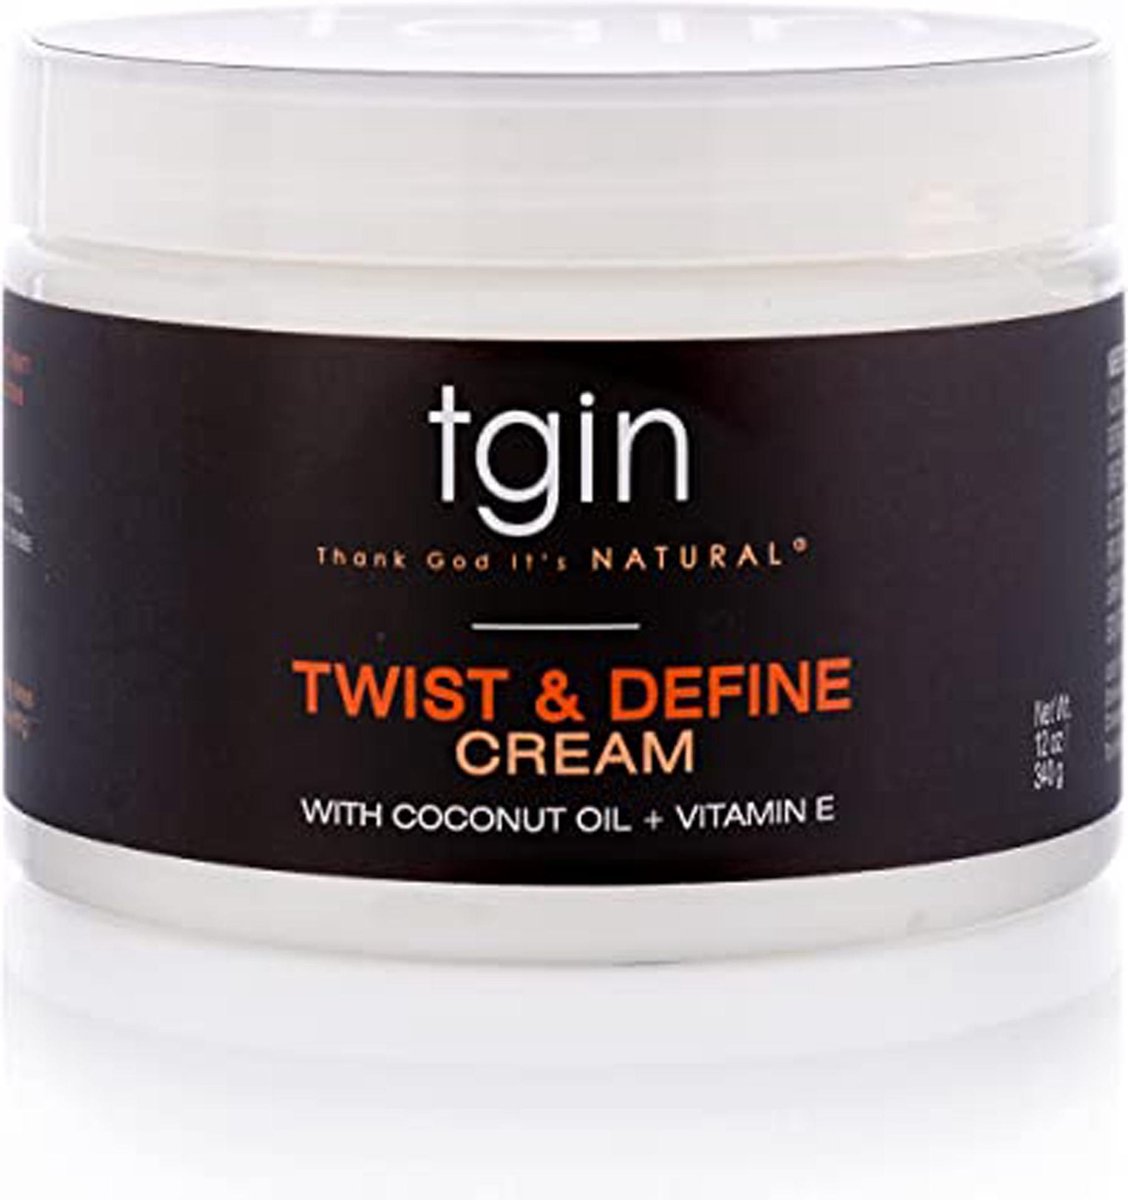 Tgin Twist And Define Cream For Natural Hair - Dry Hair - Curly Hair 12oz